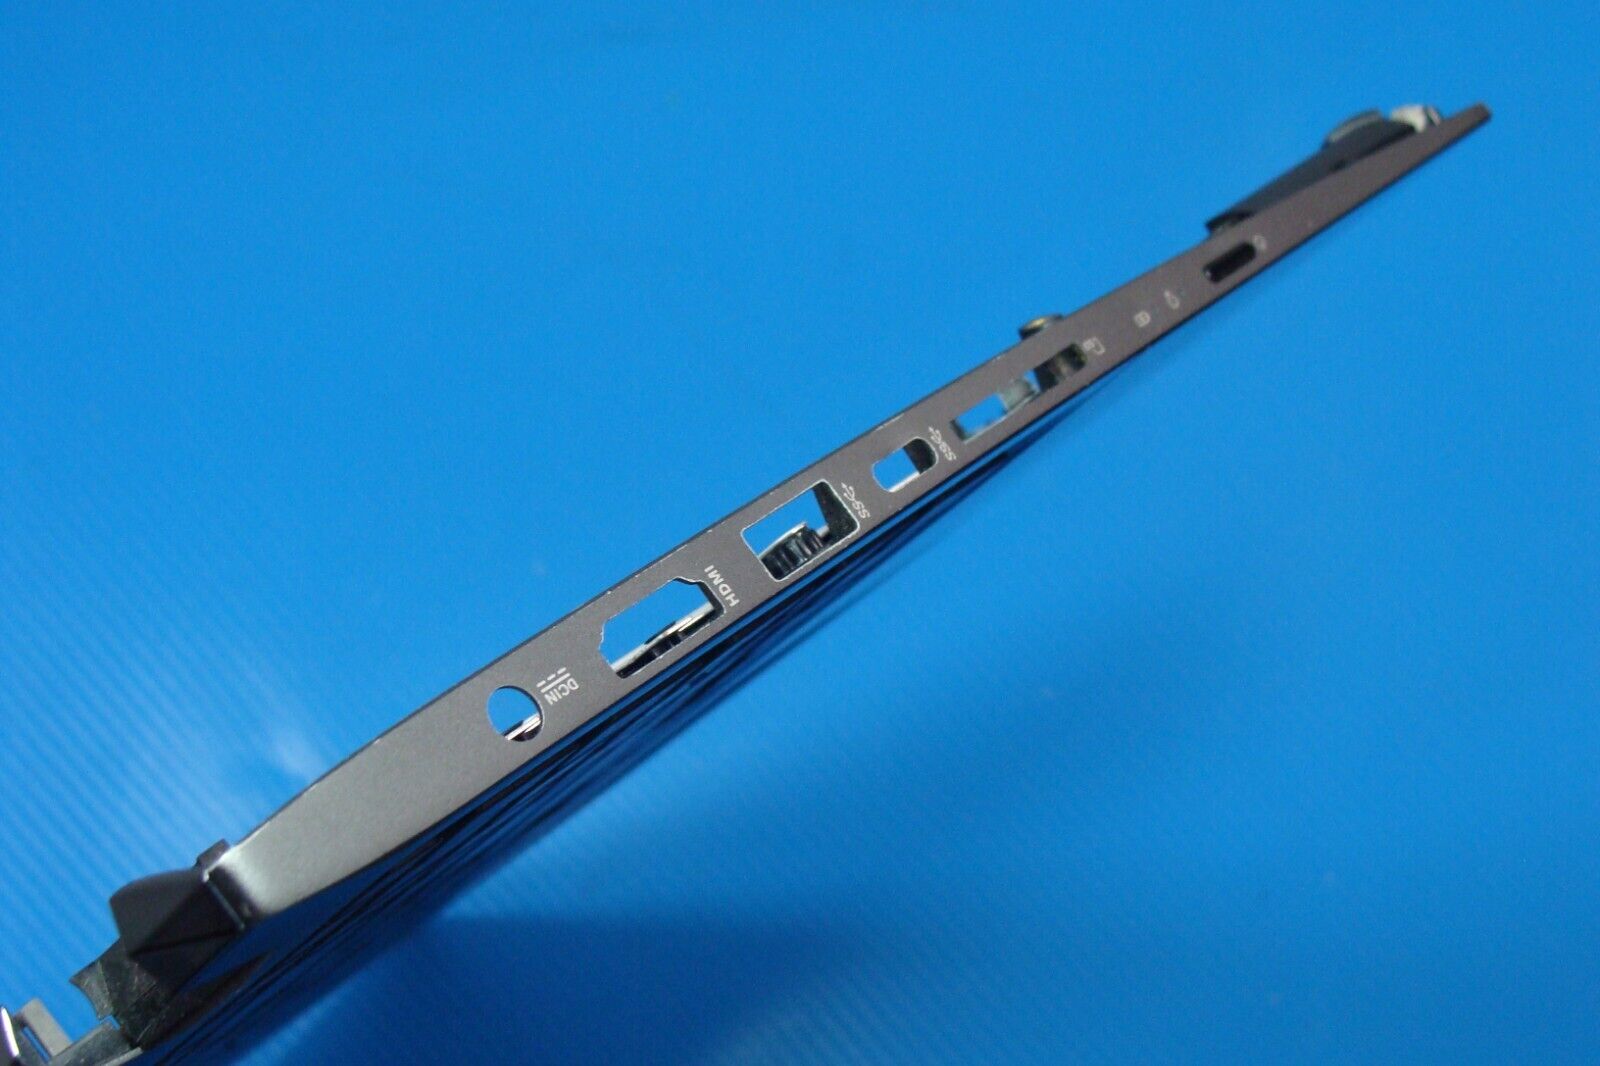 Asus ZenBook Q547F 15.6